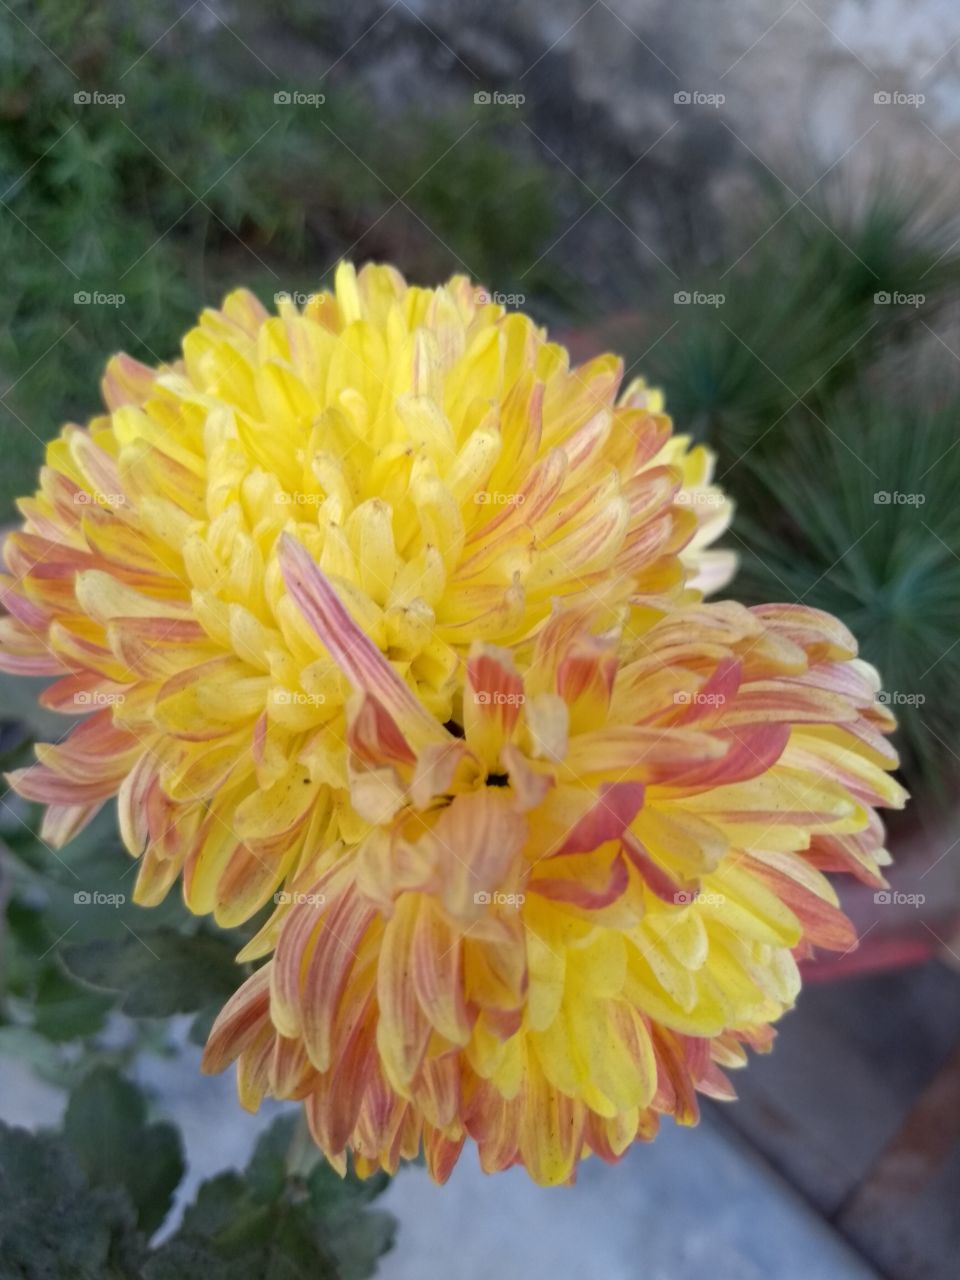 Gorgeous​ yellow dahlia